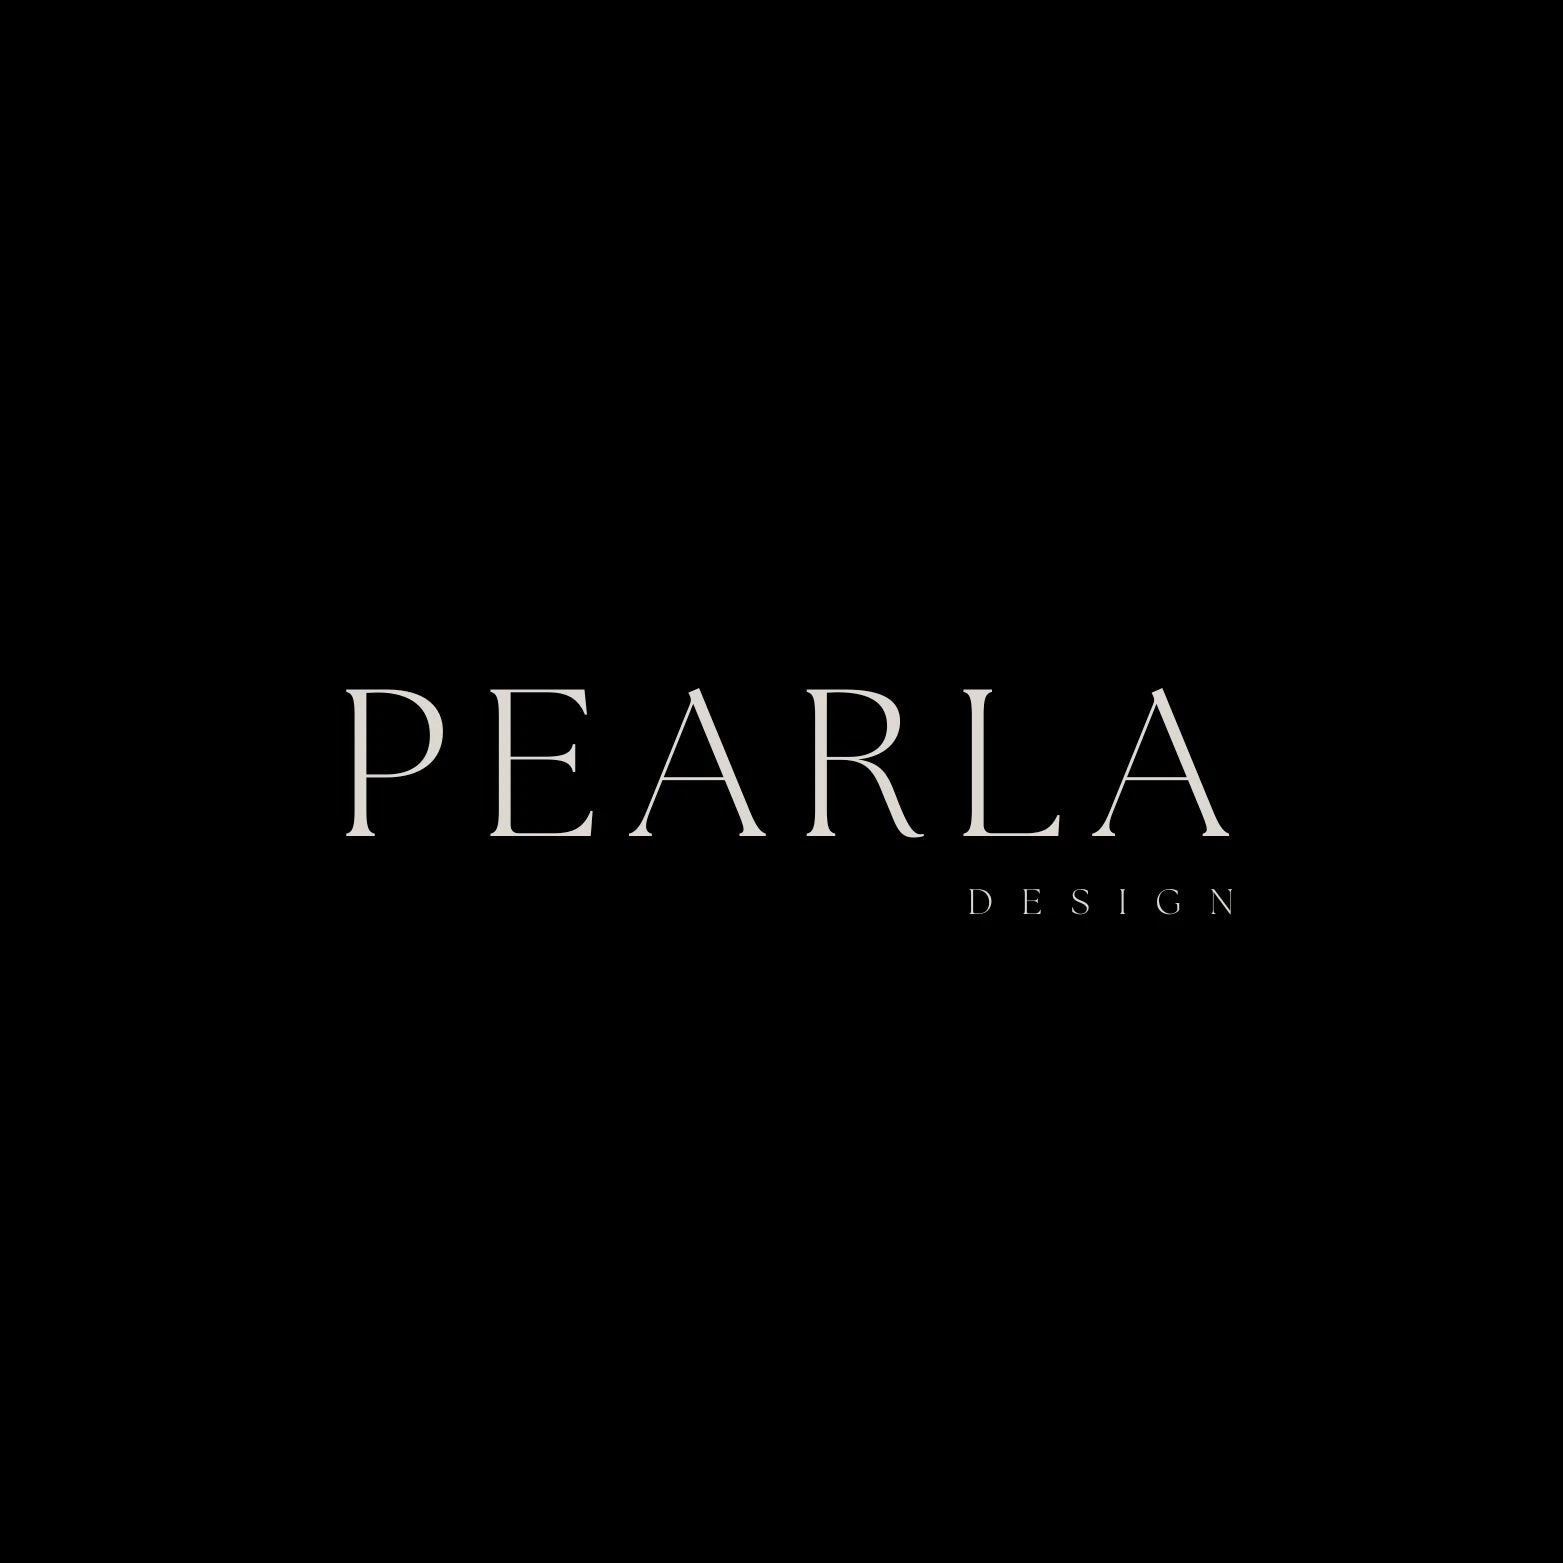 Pearla Design